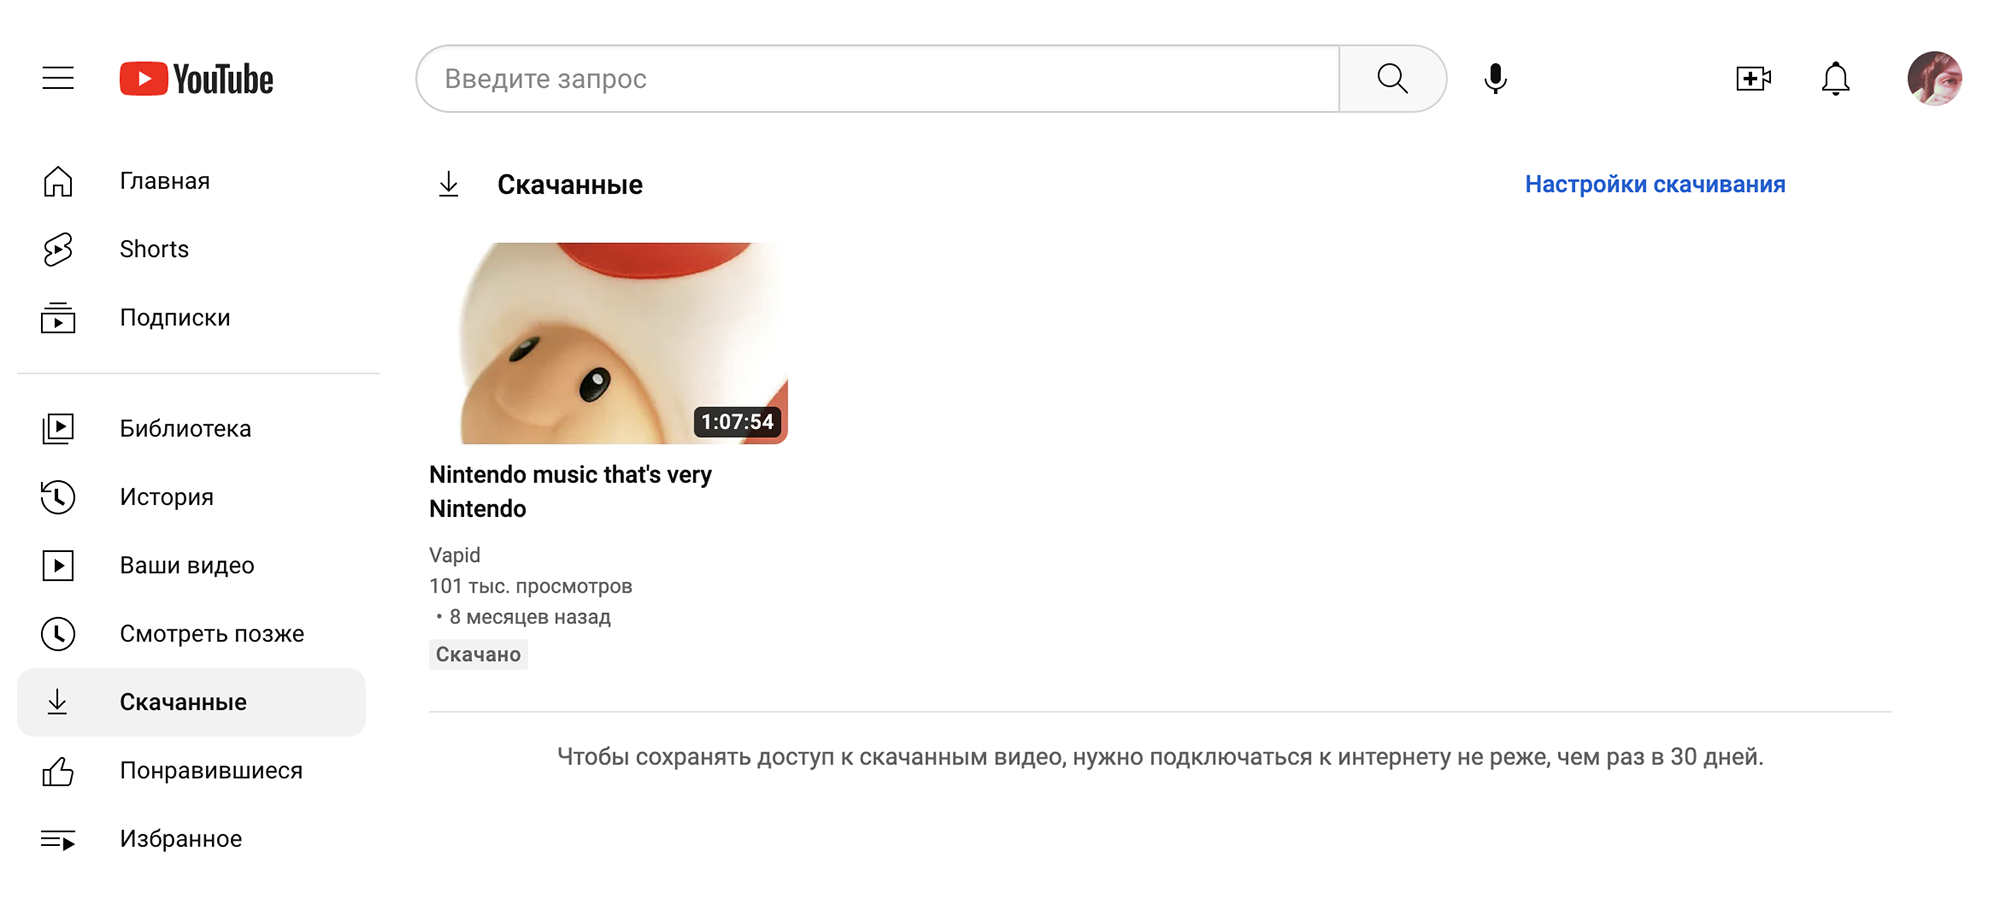 Смотрите по-русски: Яндекс запустил закадровый перевод видео